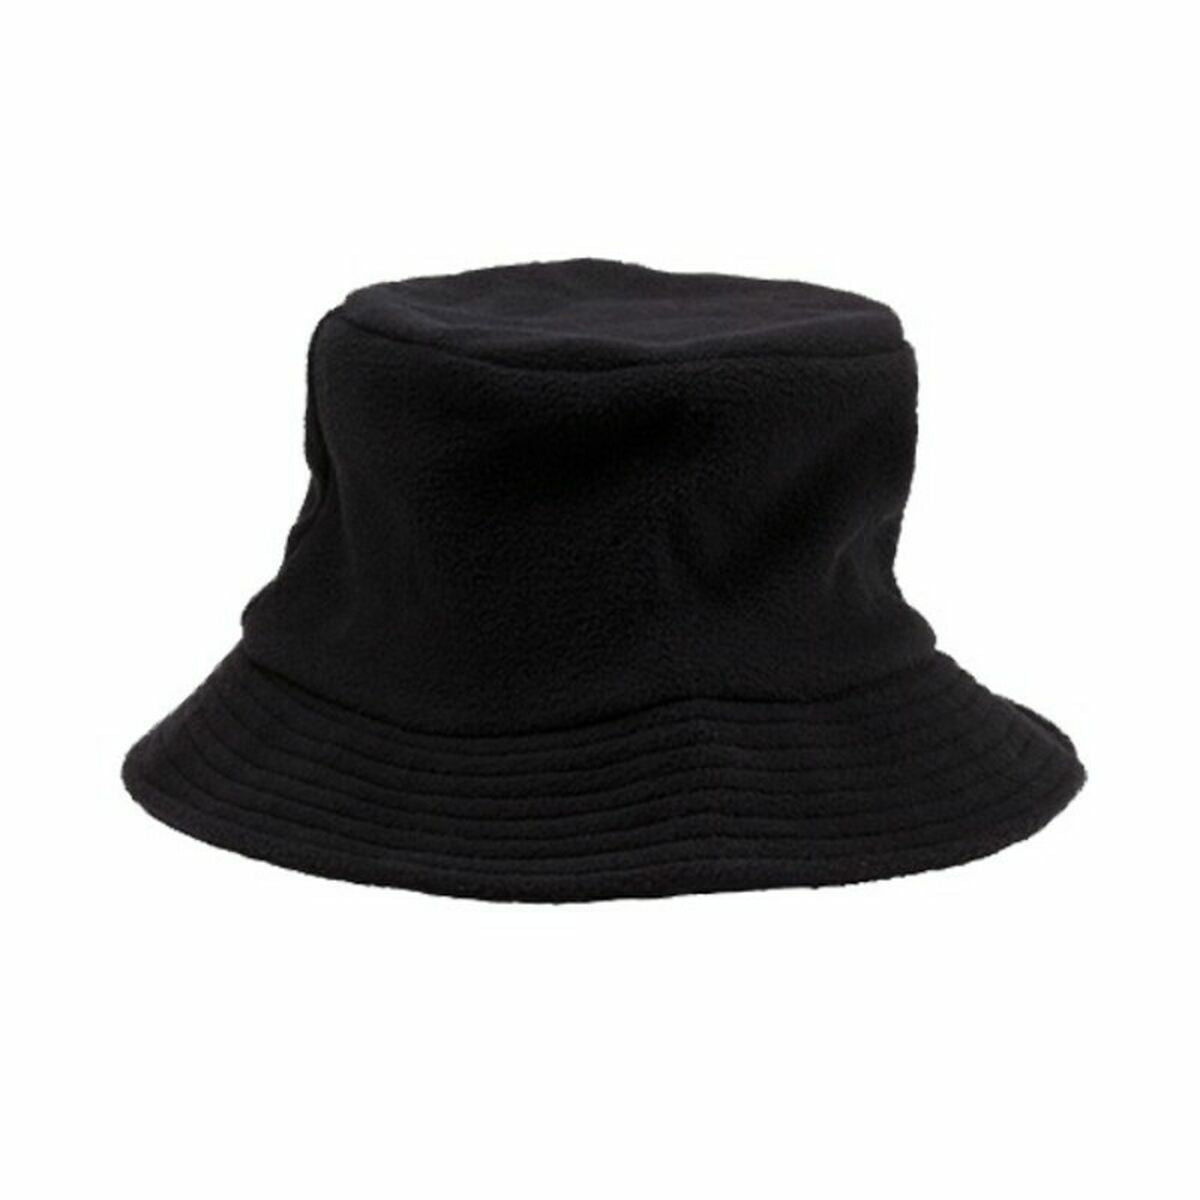 Cappello 143876 (50 Unità)